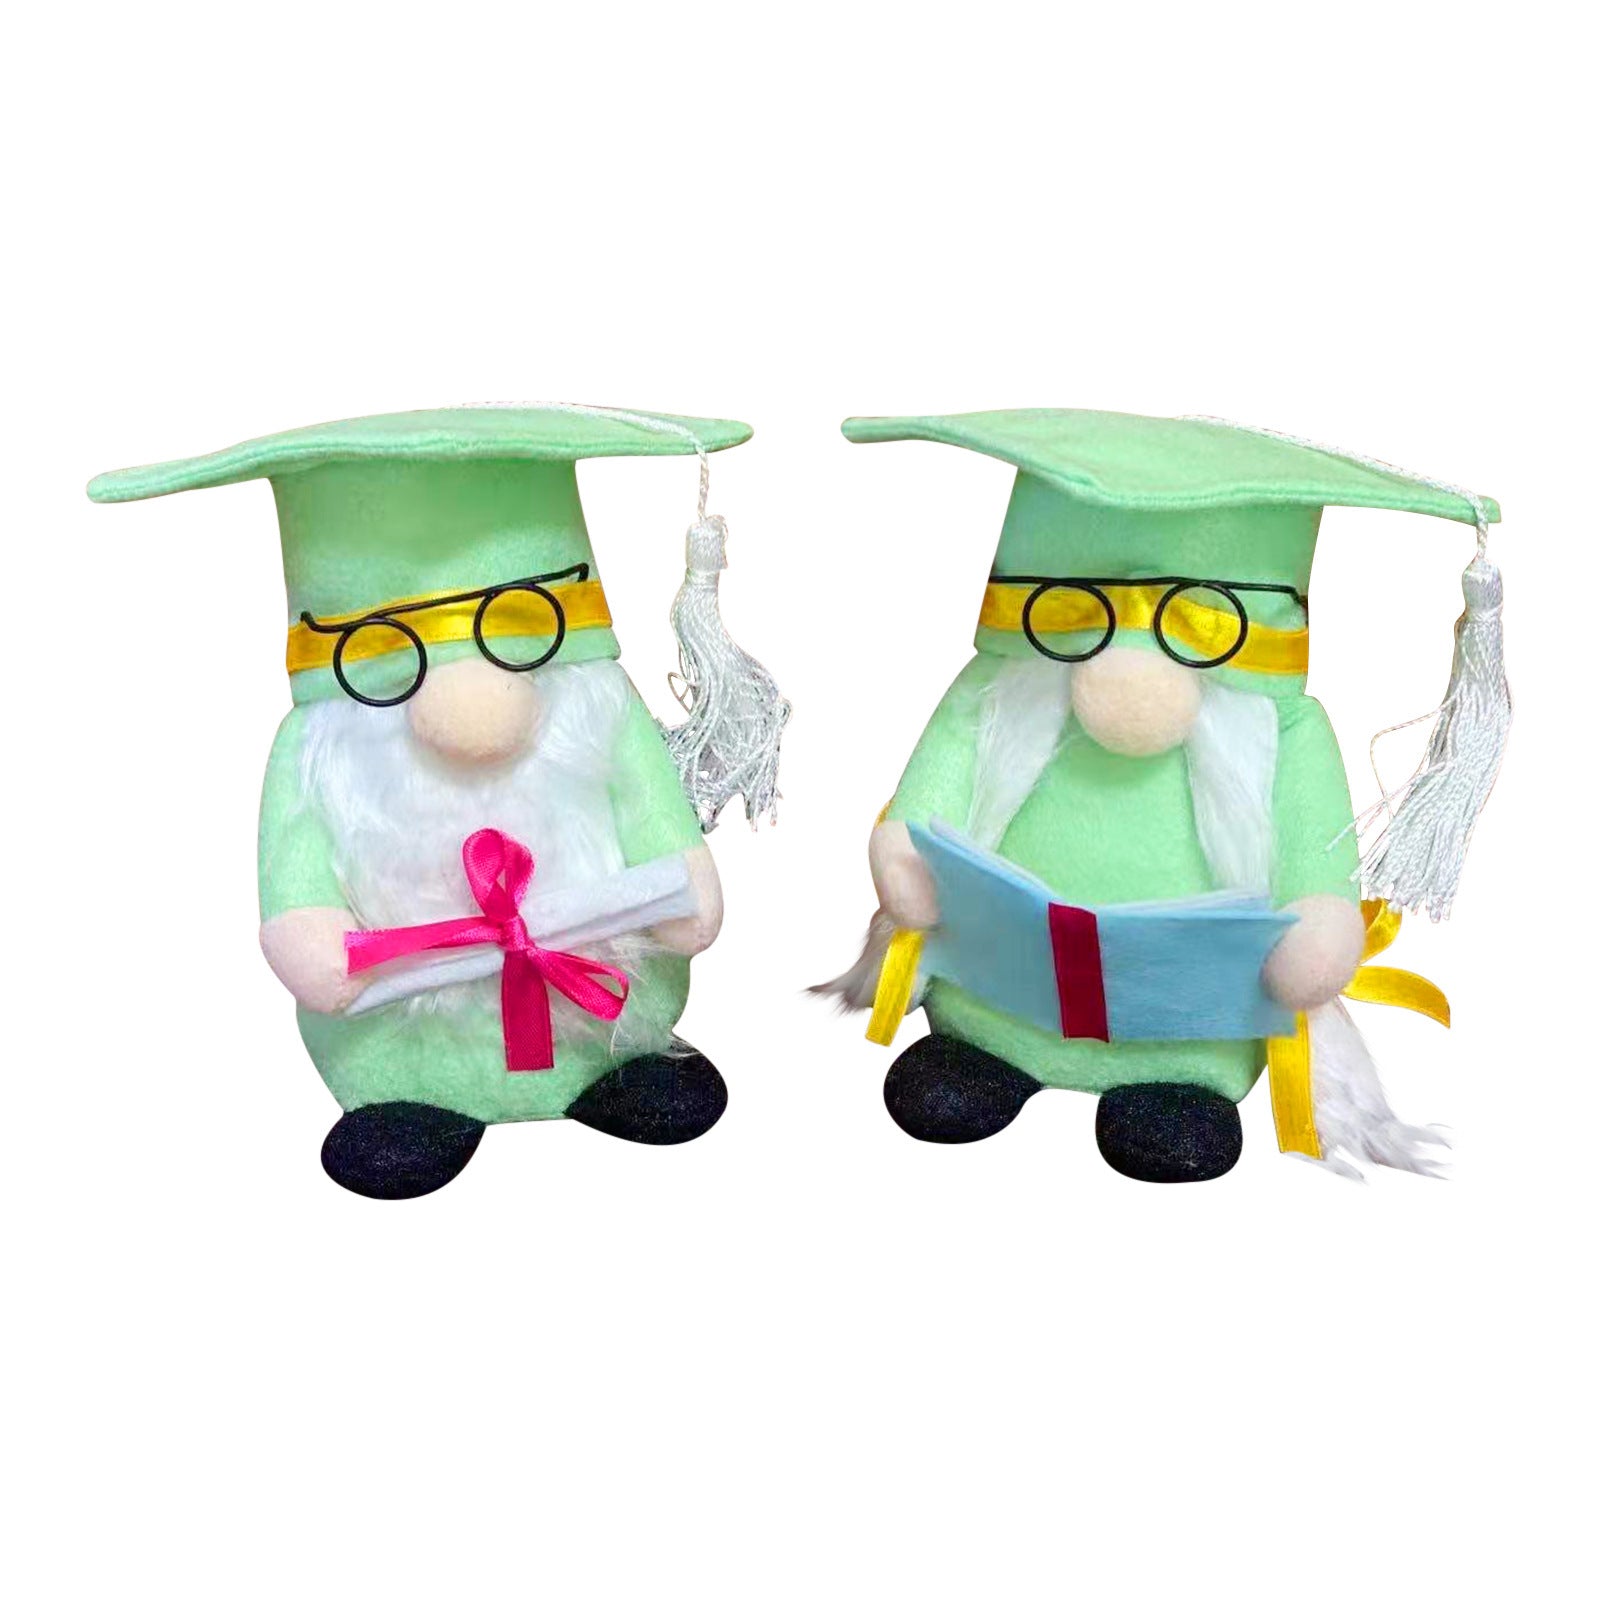 Graduation gnome, School gnome, Academic gnome, Teacher gnome, Student gnome, Cap and gown gnome, Diploma gnome, Graduation gift gnome, School supply gnome, Bookworm gnome, Classroom gnome, Apple gnome, Backpack gnome, Pencil gnome, Ruler gnome, Graduation decorations